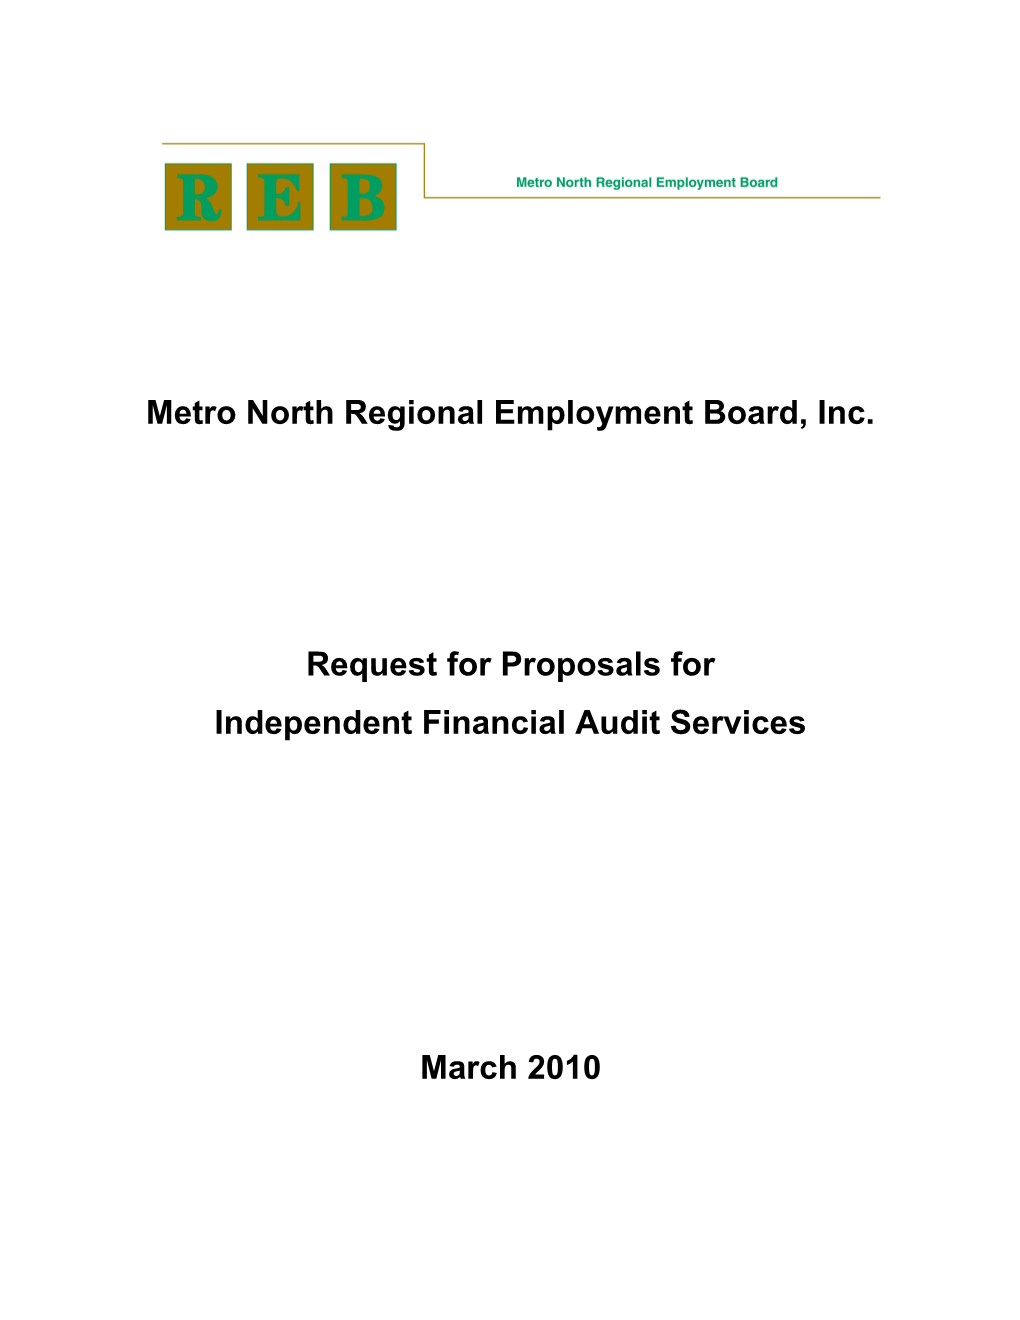 Metro North Regional Employment Board Inc